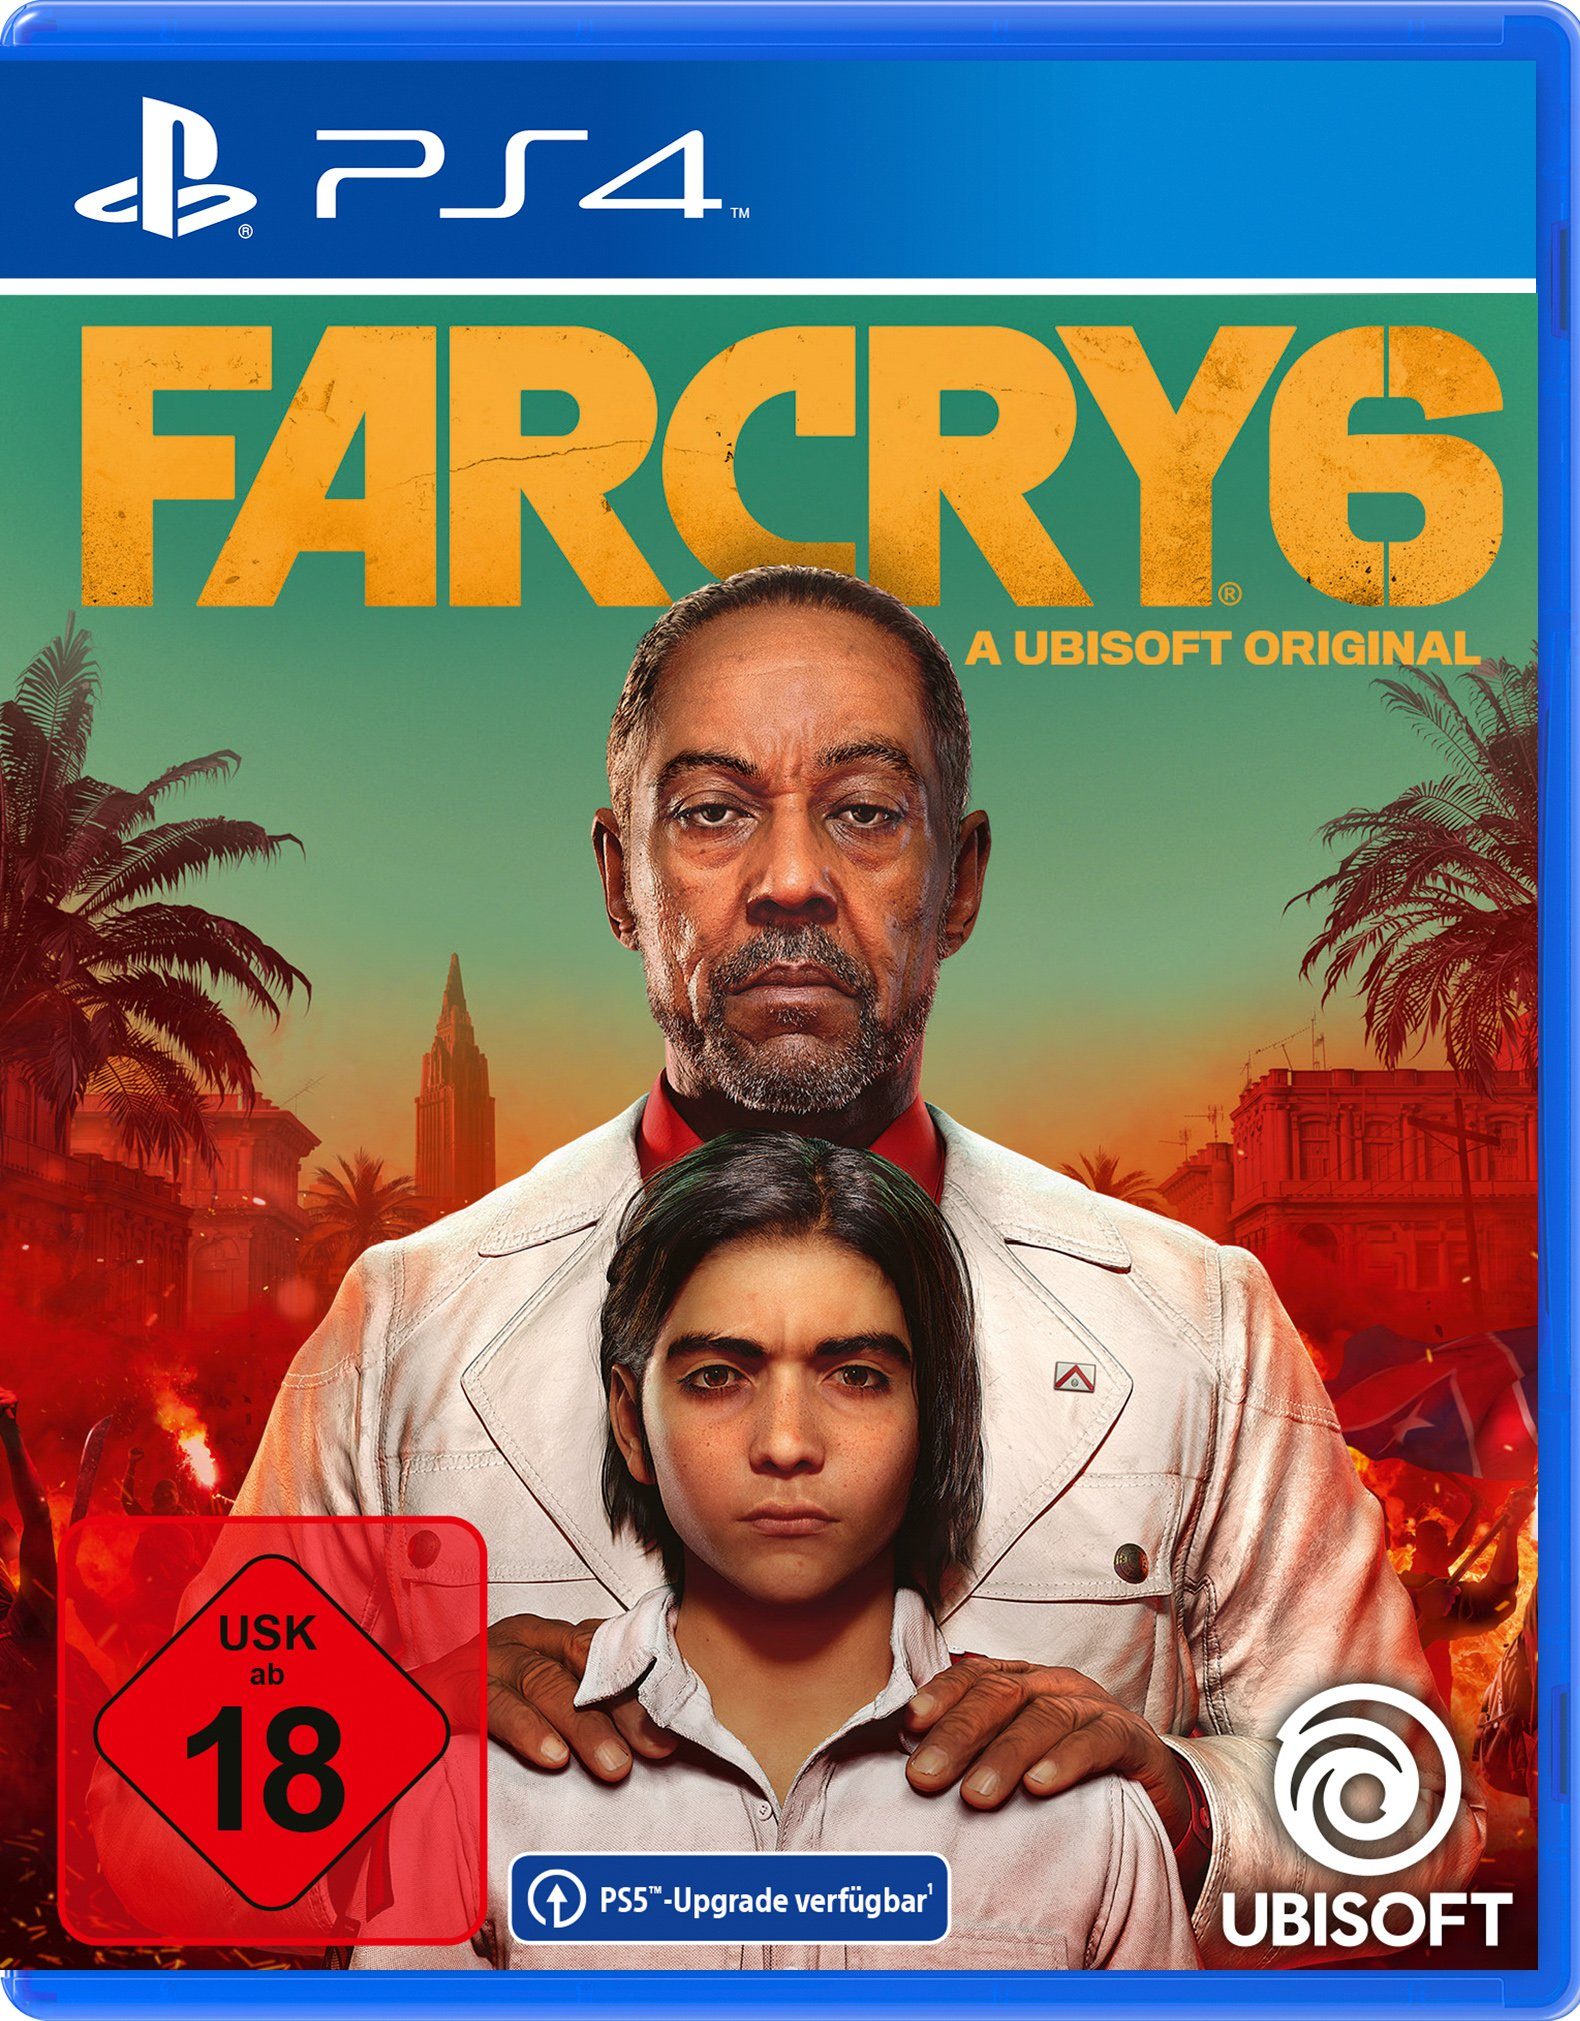 UBISOFT Far Cry 6 PlayStation 4